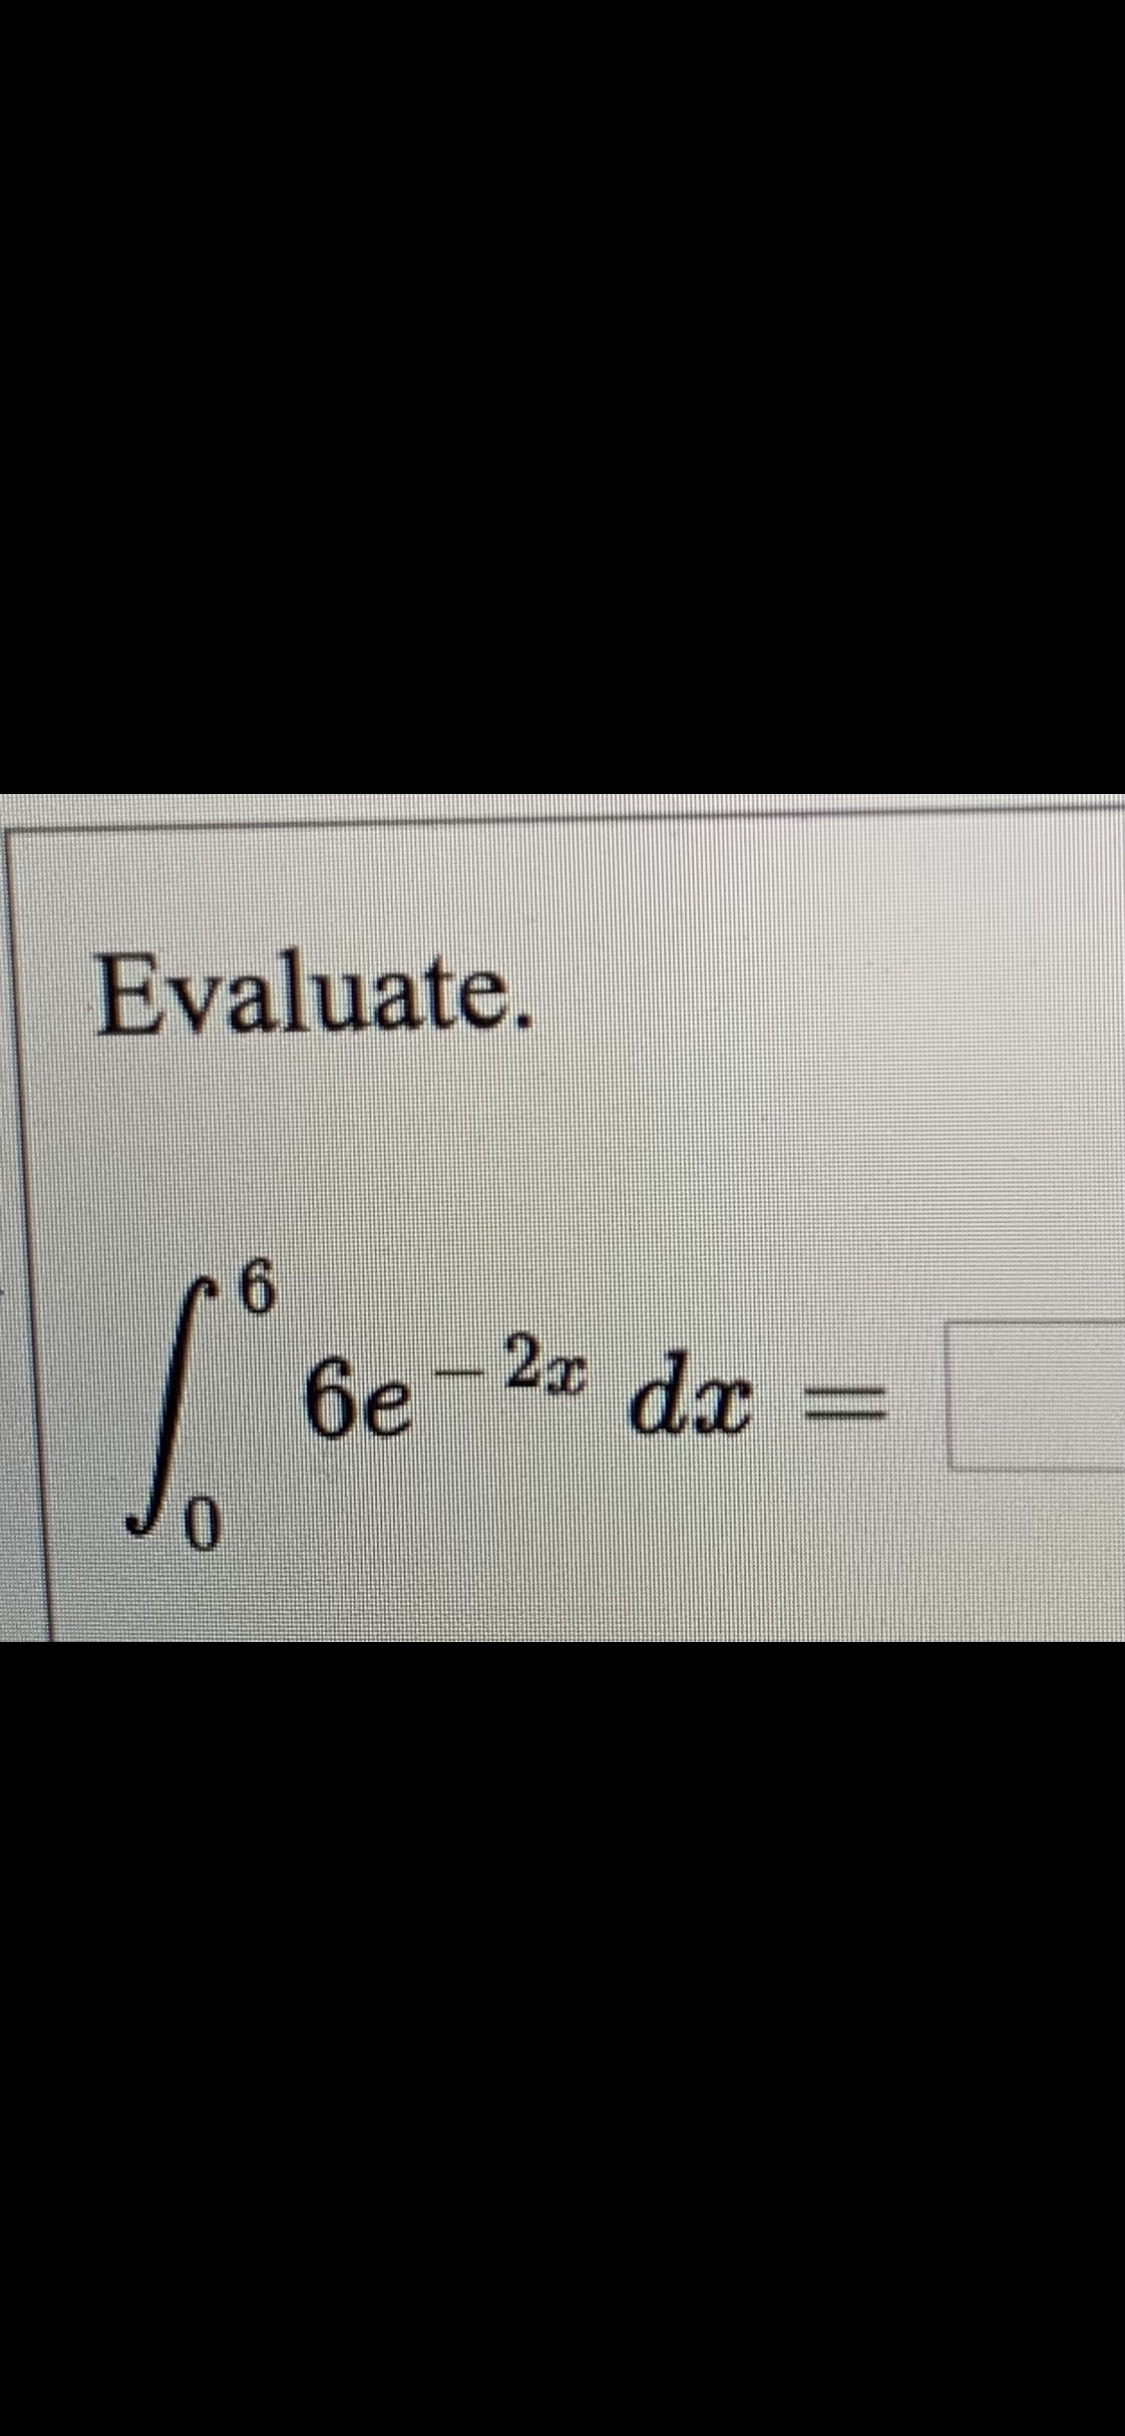 Evaluate.
6e-2x dx=
0.
